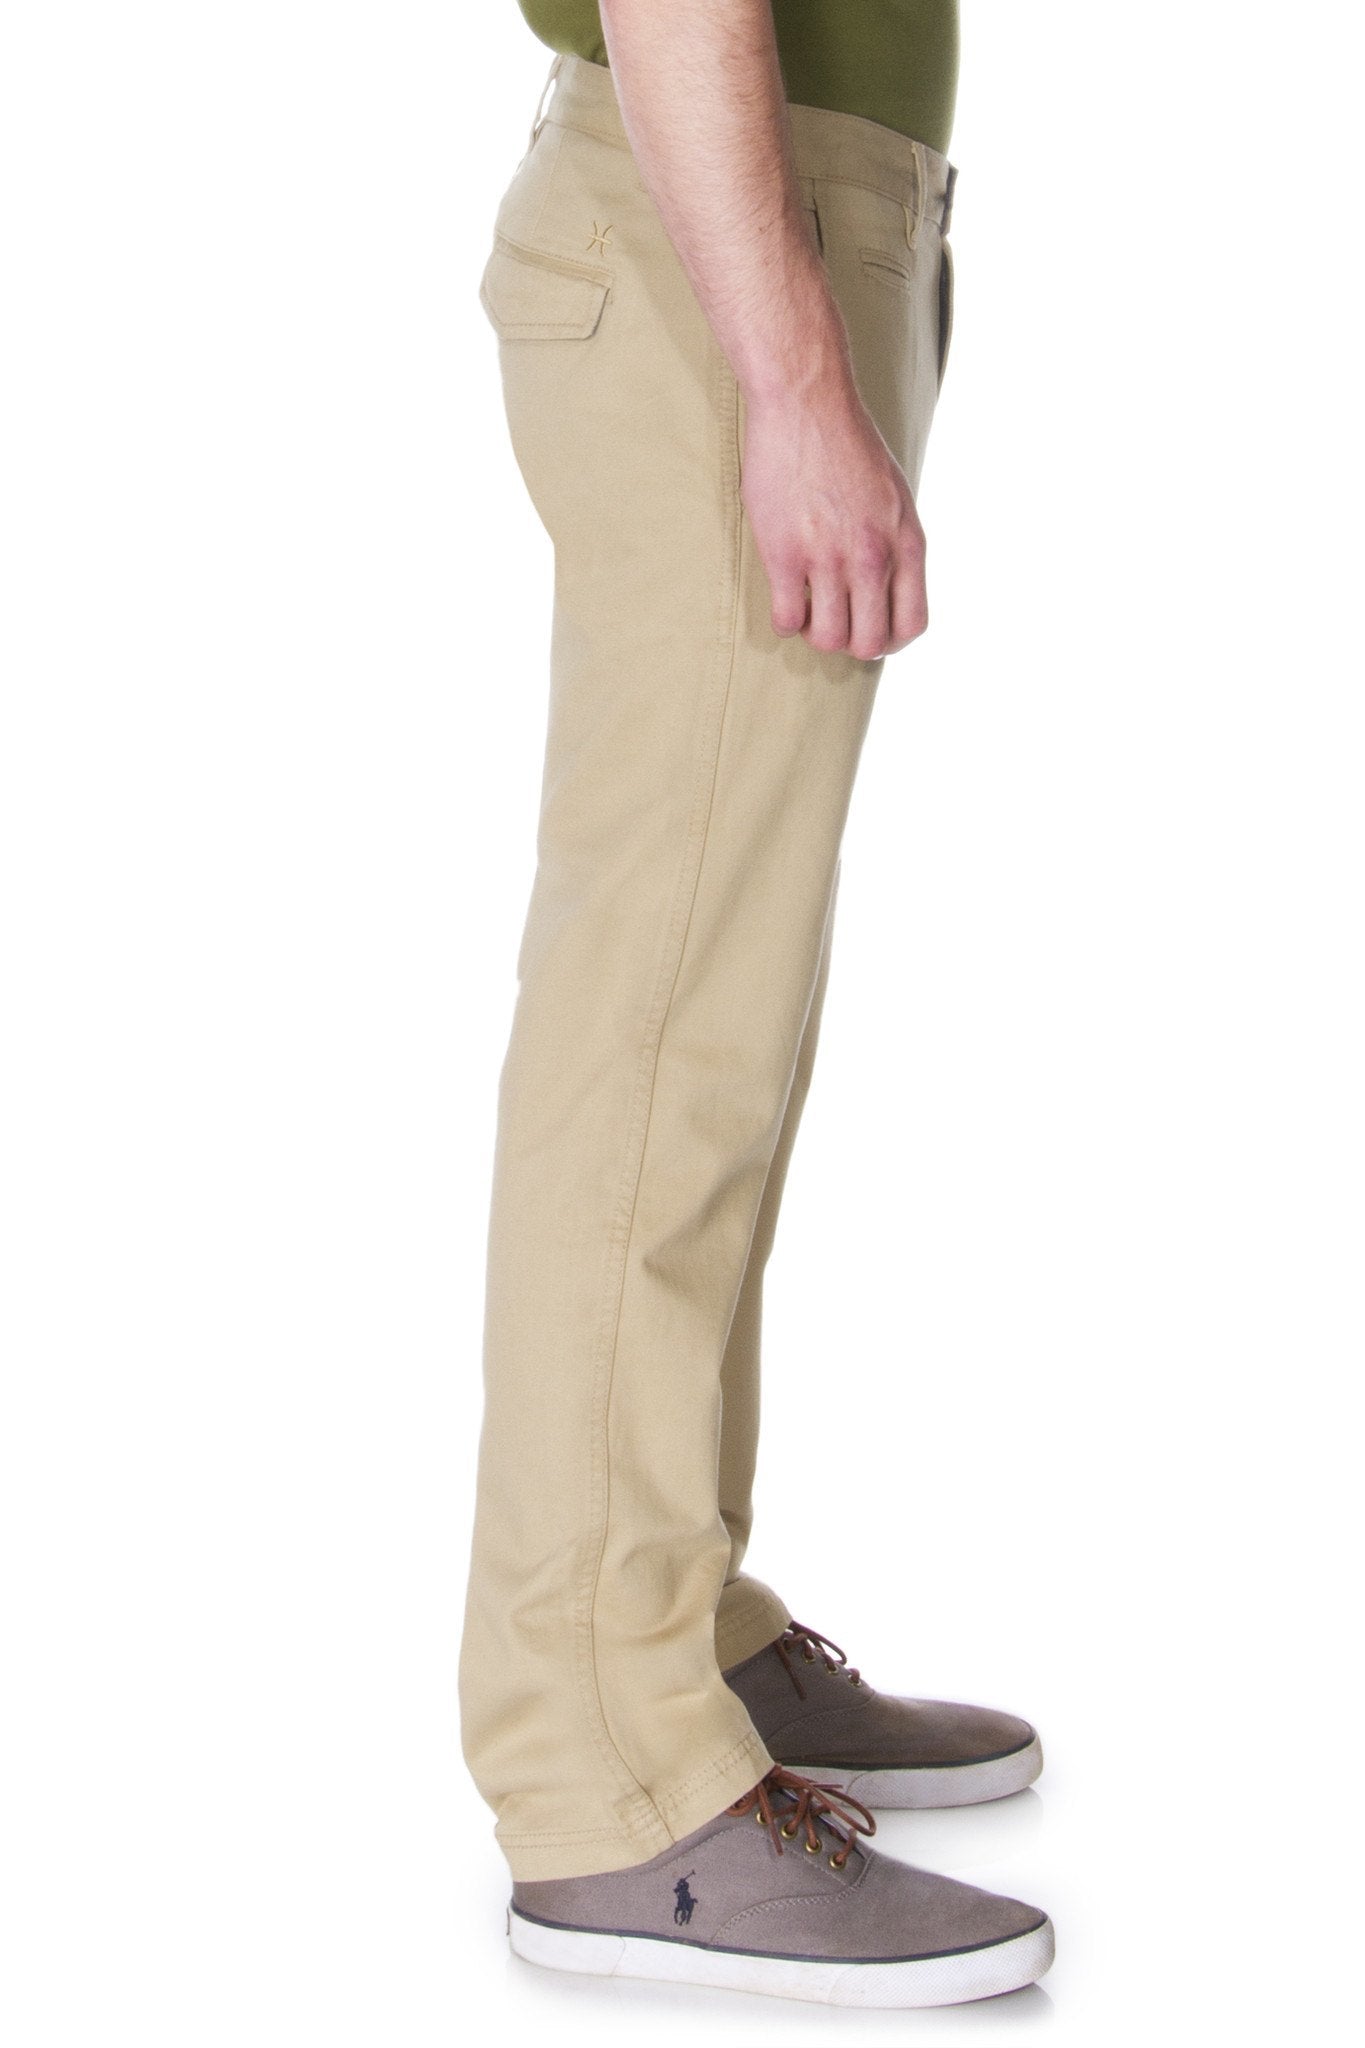 65 MCMLXV Men's Signature Slim Fit Khaki Chino Pant - Men - Apparel - Pants - Chino - Khaki - Benn~Burry